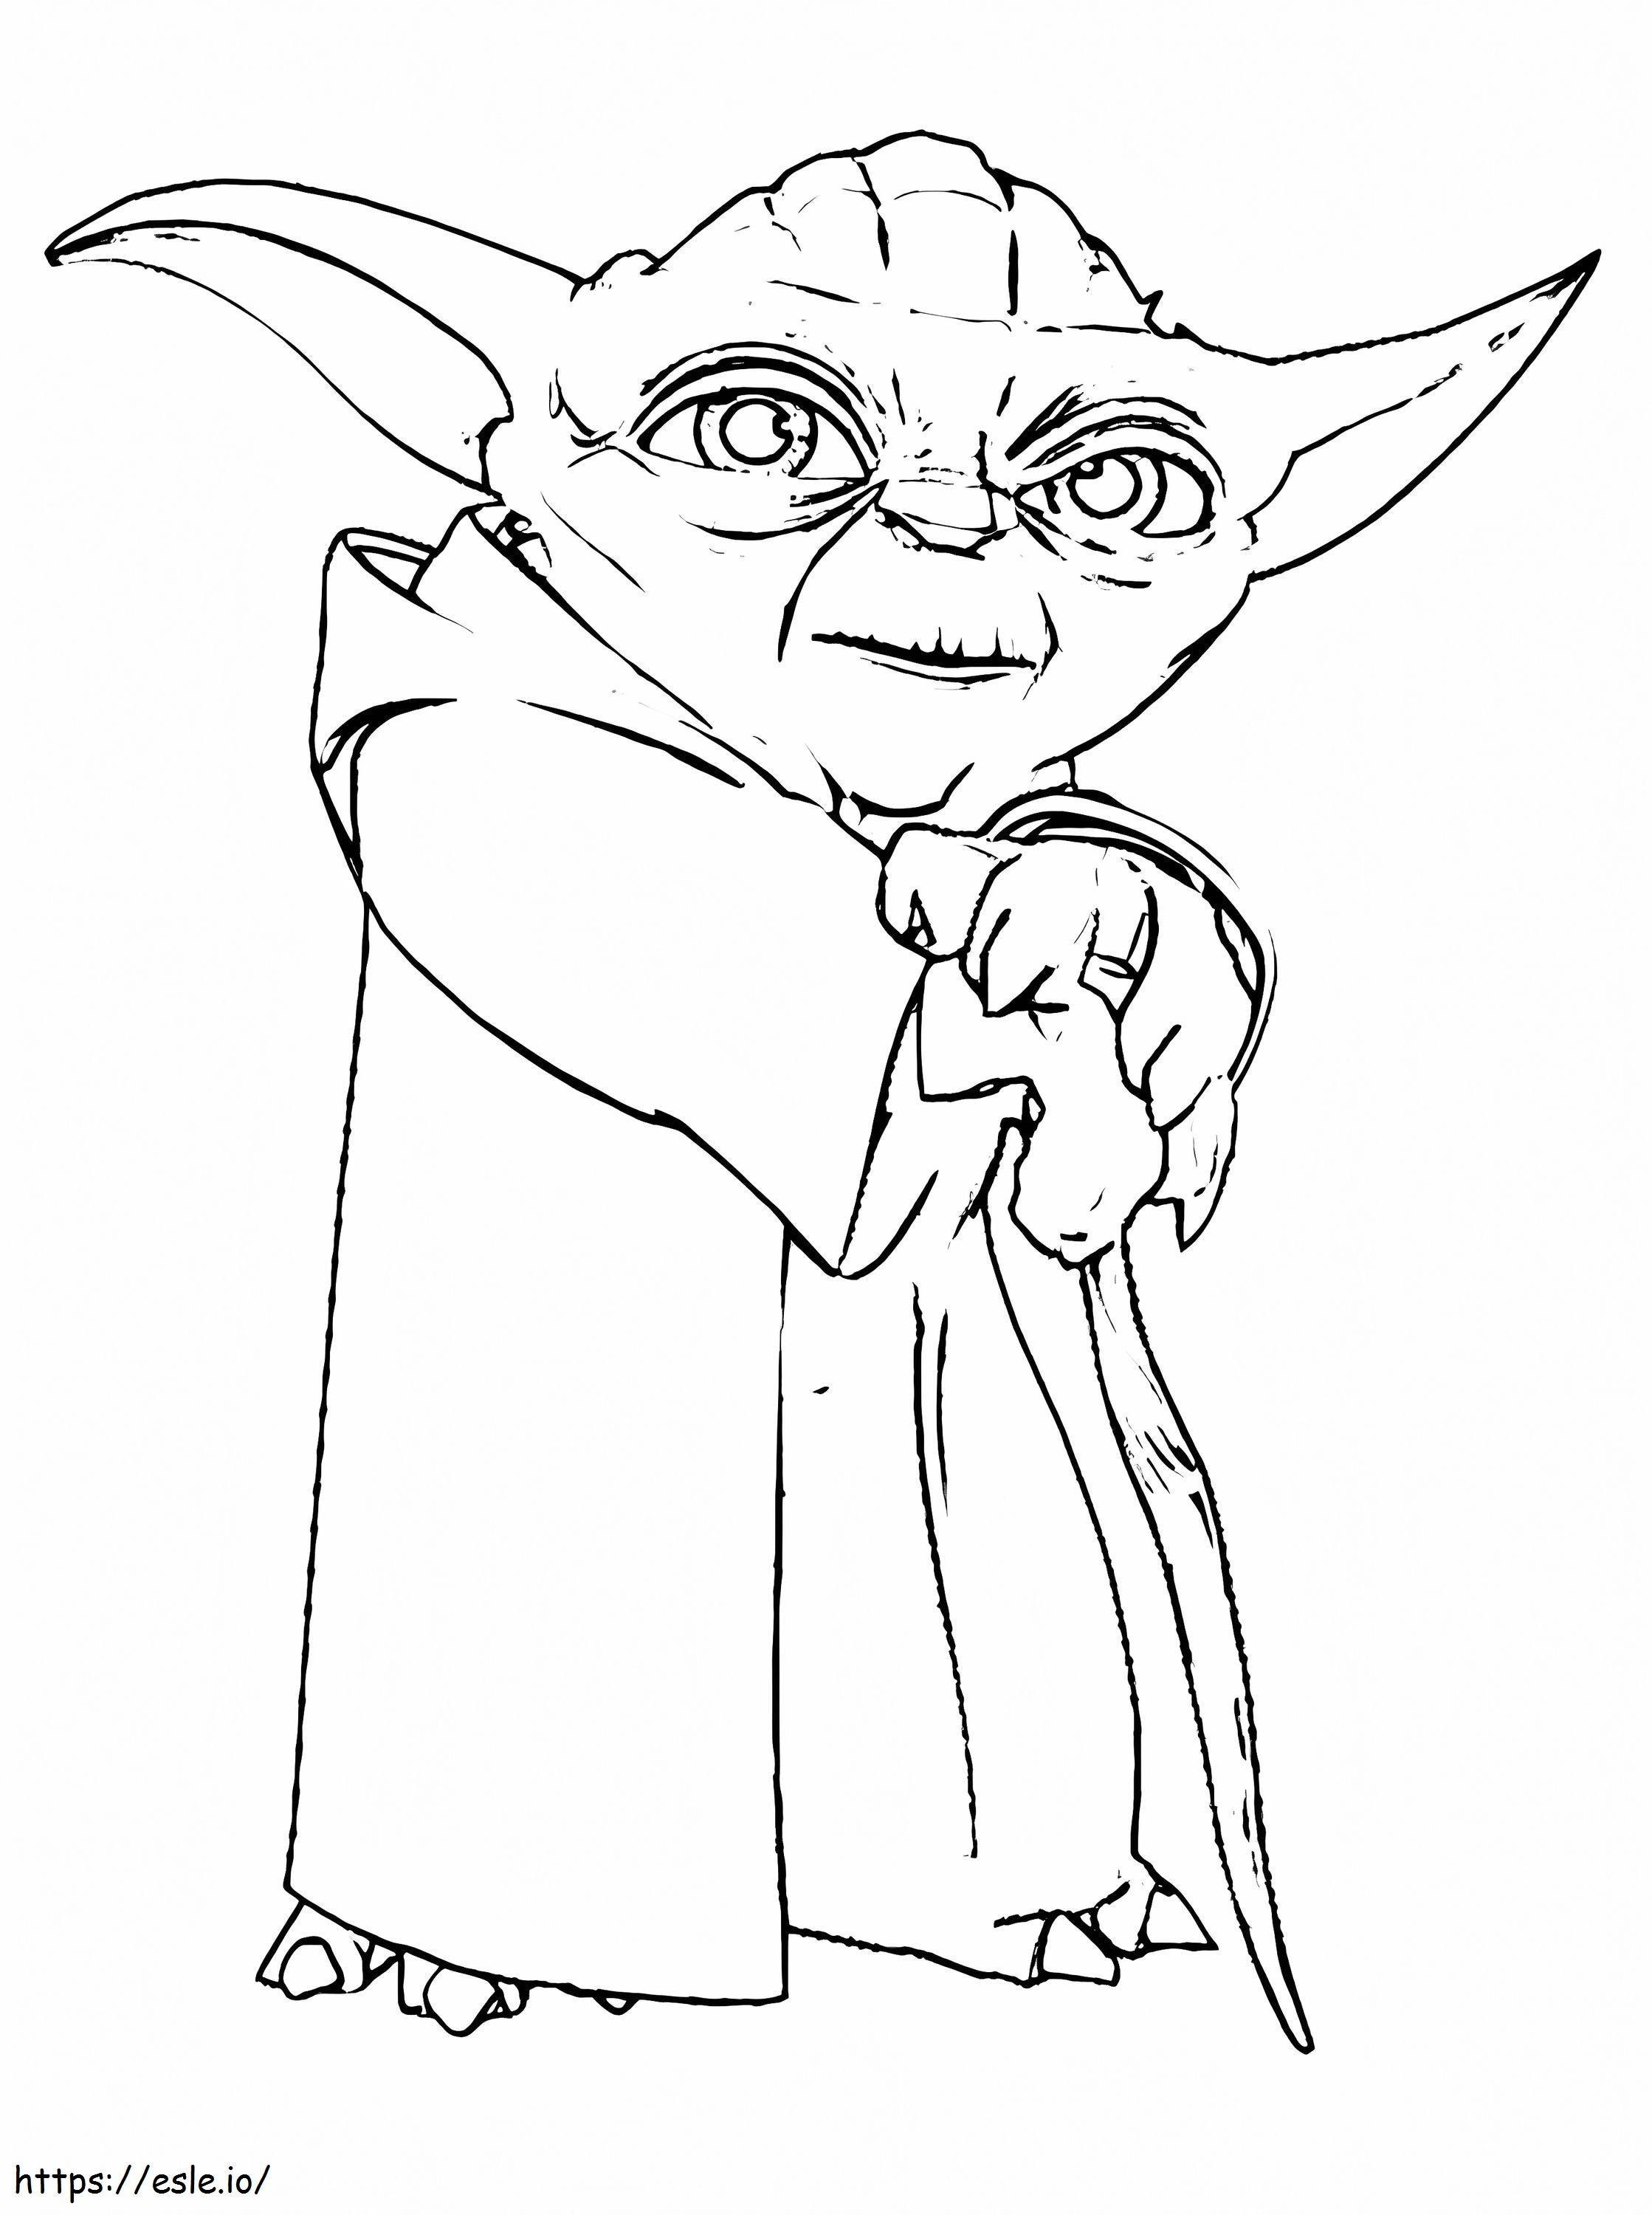 Star Wars Master Yoda coloring page